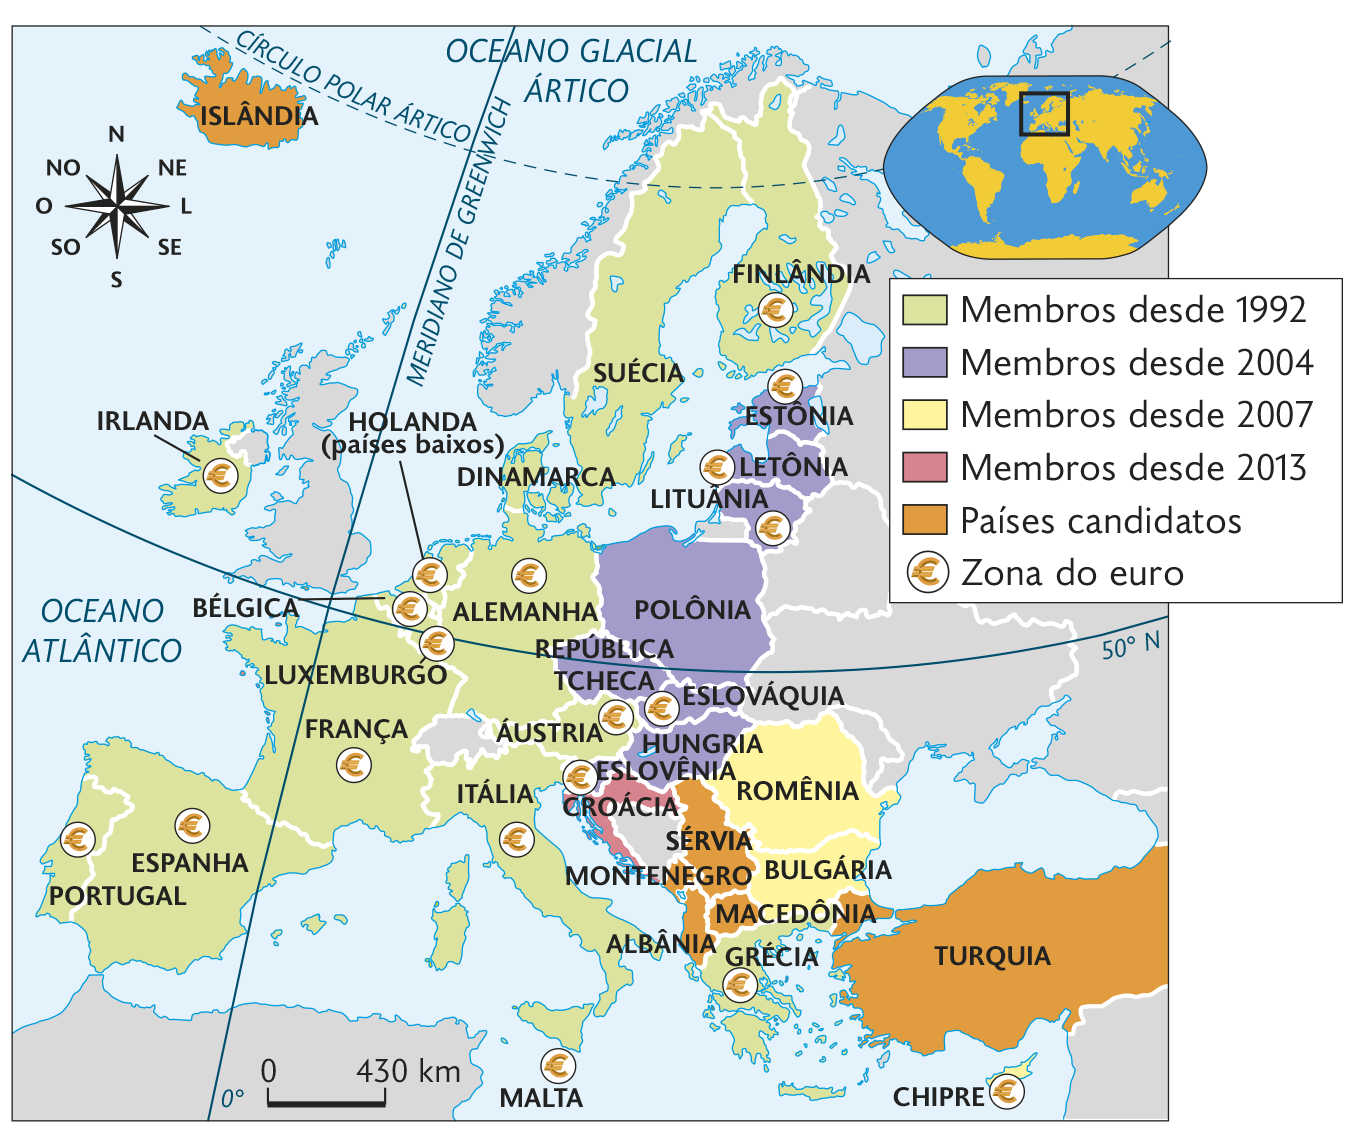 Mapa. União Europeia (1992-2018). Mapa territorial, destacado conforme legenda. Membros desde 1992: IRLANDA, FINLÂNDIA, SUÉCIA, DINAMARCA, ALEMANHA, HOLANDA (países baixos), BÉLGICA, LUXEMBURGO, FRANÇA, ESPANHA, PORTUGAL, ITÁLIA, ÁUSTRIA, GRÉCIA. Membros desde 2004: ESTÔNIA, LETÔNIA, LITUÂNIA, POLÔNIA, REPÚBLICA TCHECA, ESLOVÁQUIA, HUNGRIA ESLOVÊNIA Membros desde 2007: CHIPRE, ROMÊNIA e BULGÁRIA. Membros desde 2013: CROÁCIA. Países candidatos: MACEDÔNIA, SÉRVIA, MONTENEGRO, ALBÂNIA, TURQUIA e ISLÂNDIA. Zona do euro: IRLANDA, FINLÂNDIA, ALEMANHA, HOLANDA (Países Baixos), BÉLGICA, LUXEMBURGO, FRANÇA, ESPANHA, PORTUGAL, ITÁLIA, ÁUSTRIA, GRÉCIA, ESTÔNIA, LETÔNIA, LITUÂNIA, ESLOVÁQUIA, MALTA e CHIPRE. Na parte superior, à direita, planisfério destacando parte da Europa, África e Ásia. Ao lado, representação da rosa dos ventos e escala de 430 quilômetros por centímetro.